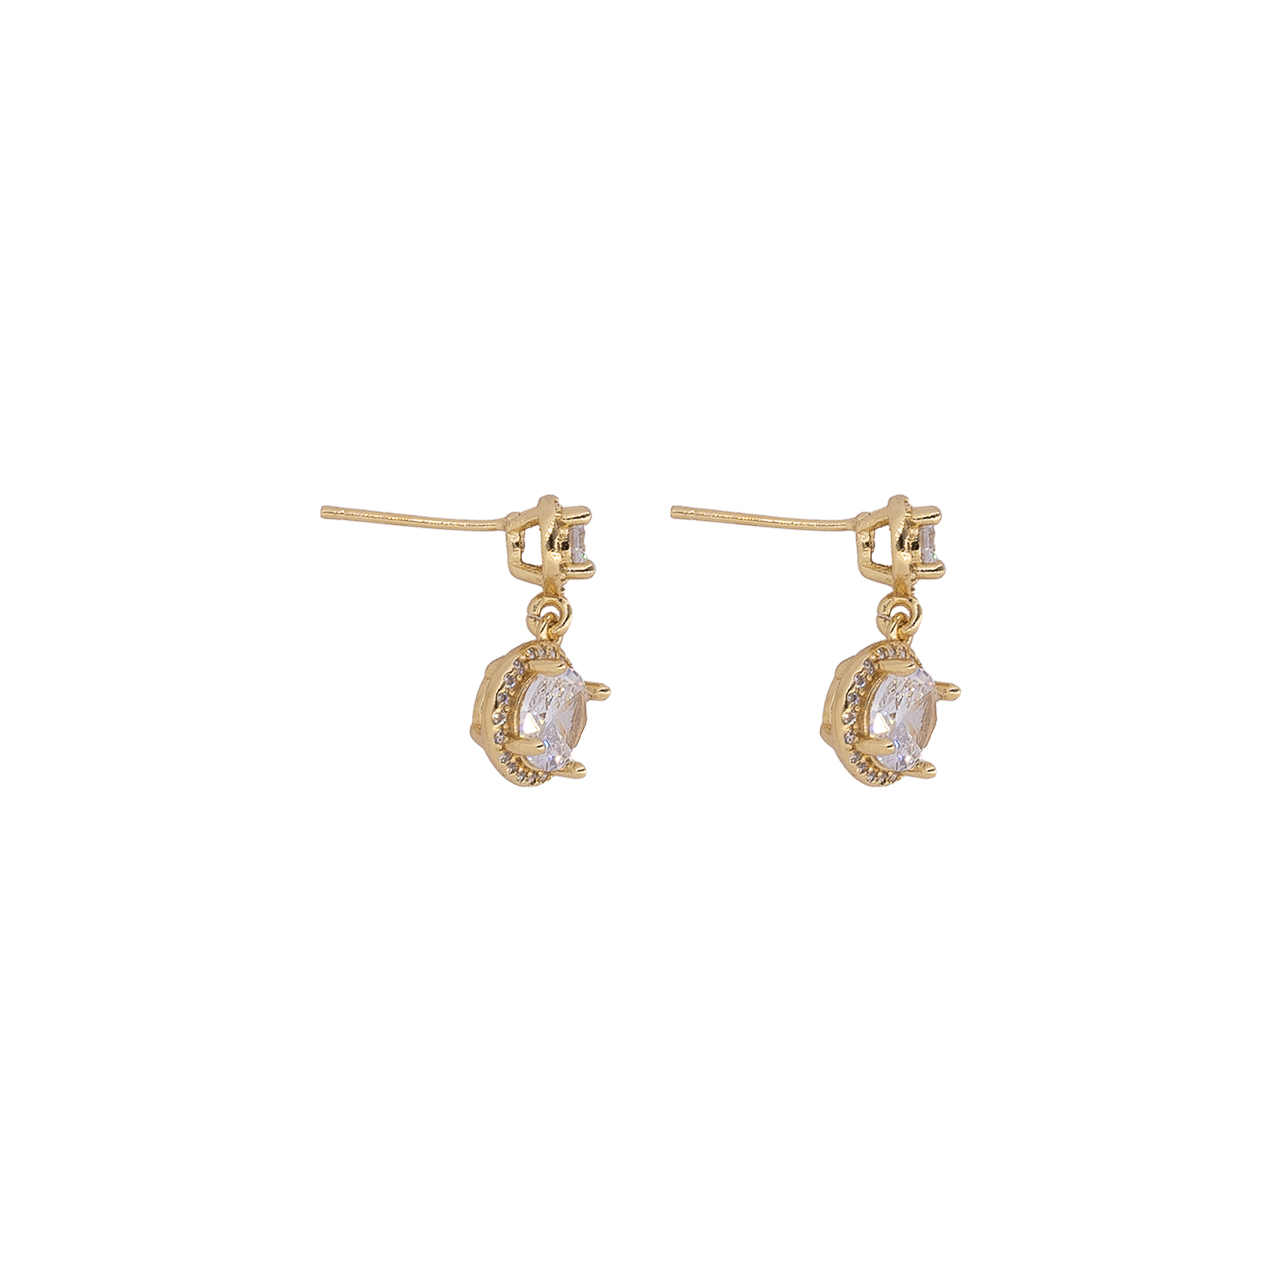 Arete de bronce con baño de oro 24k- Jewelry- Joyeria- brand- ventas al mayor- exclusiviad- tendencia marca SODHANA